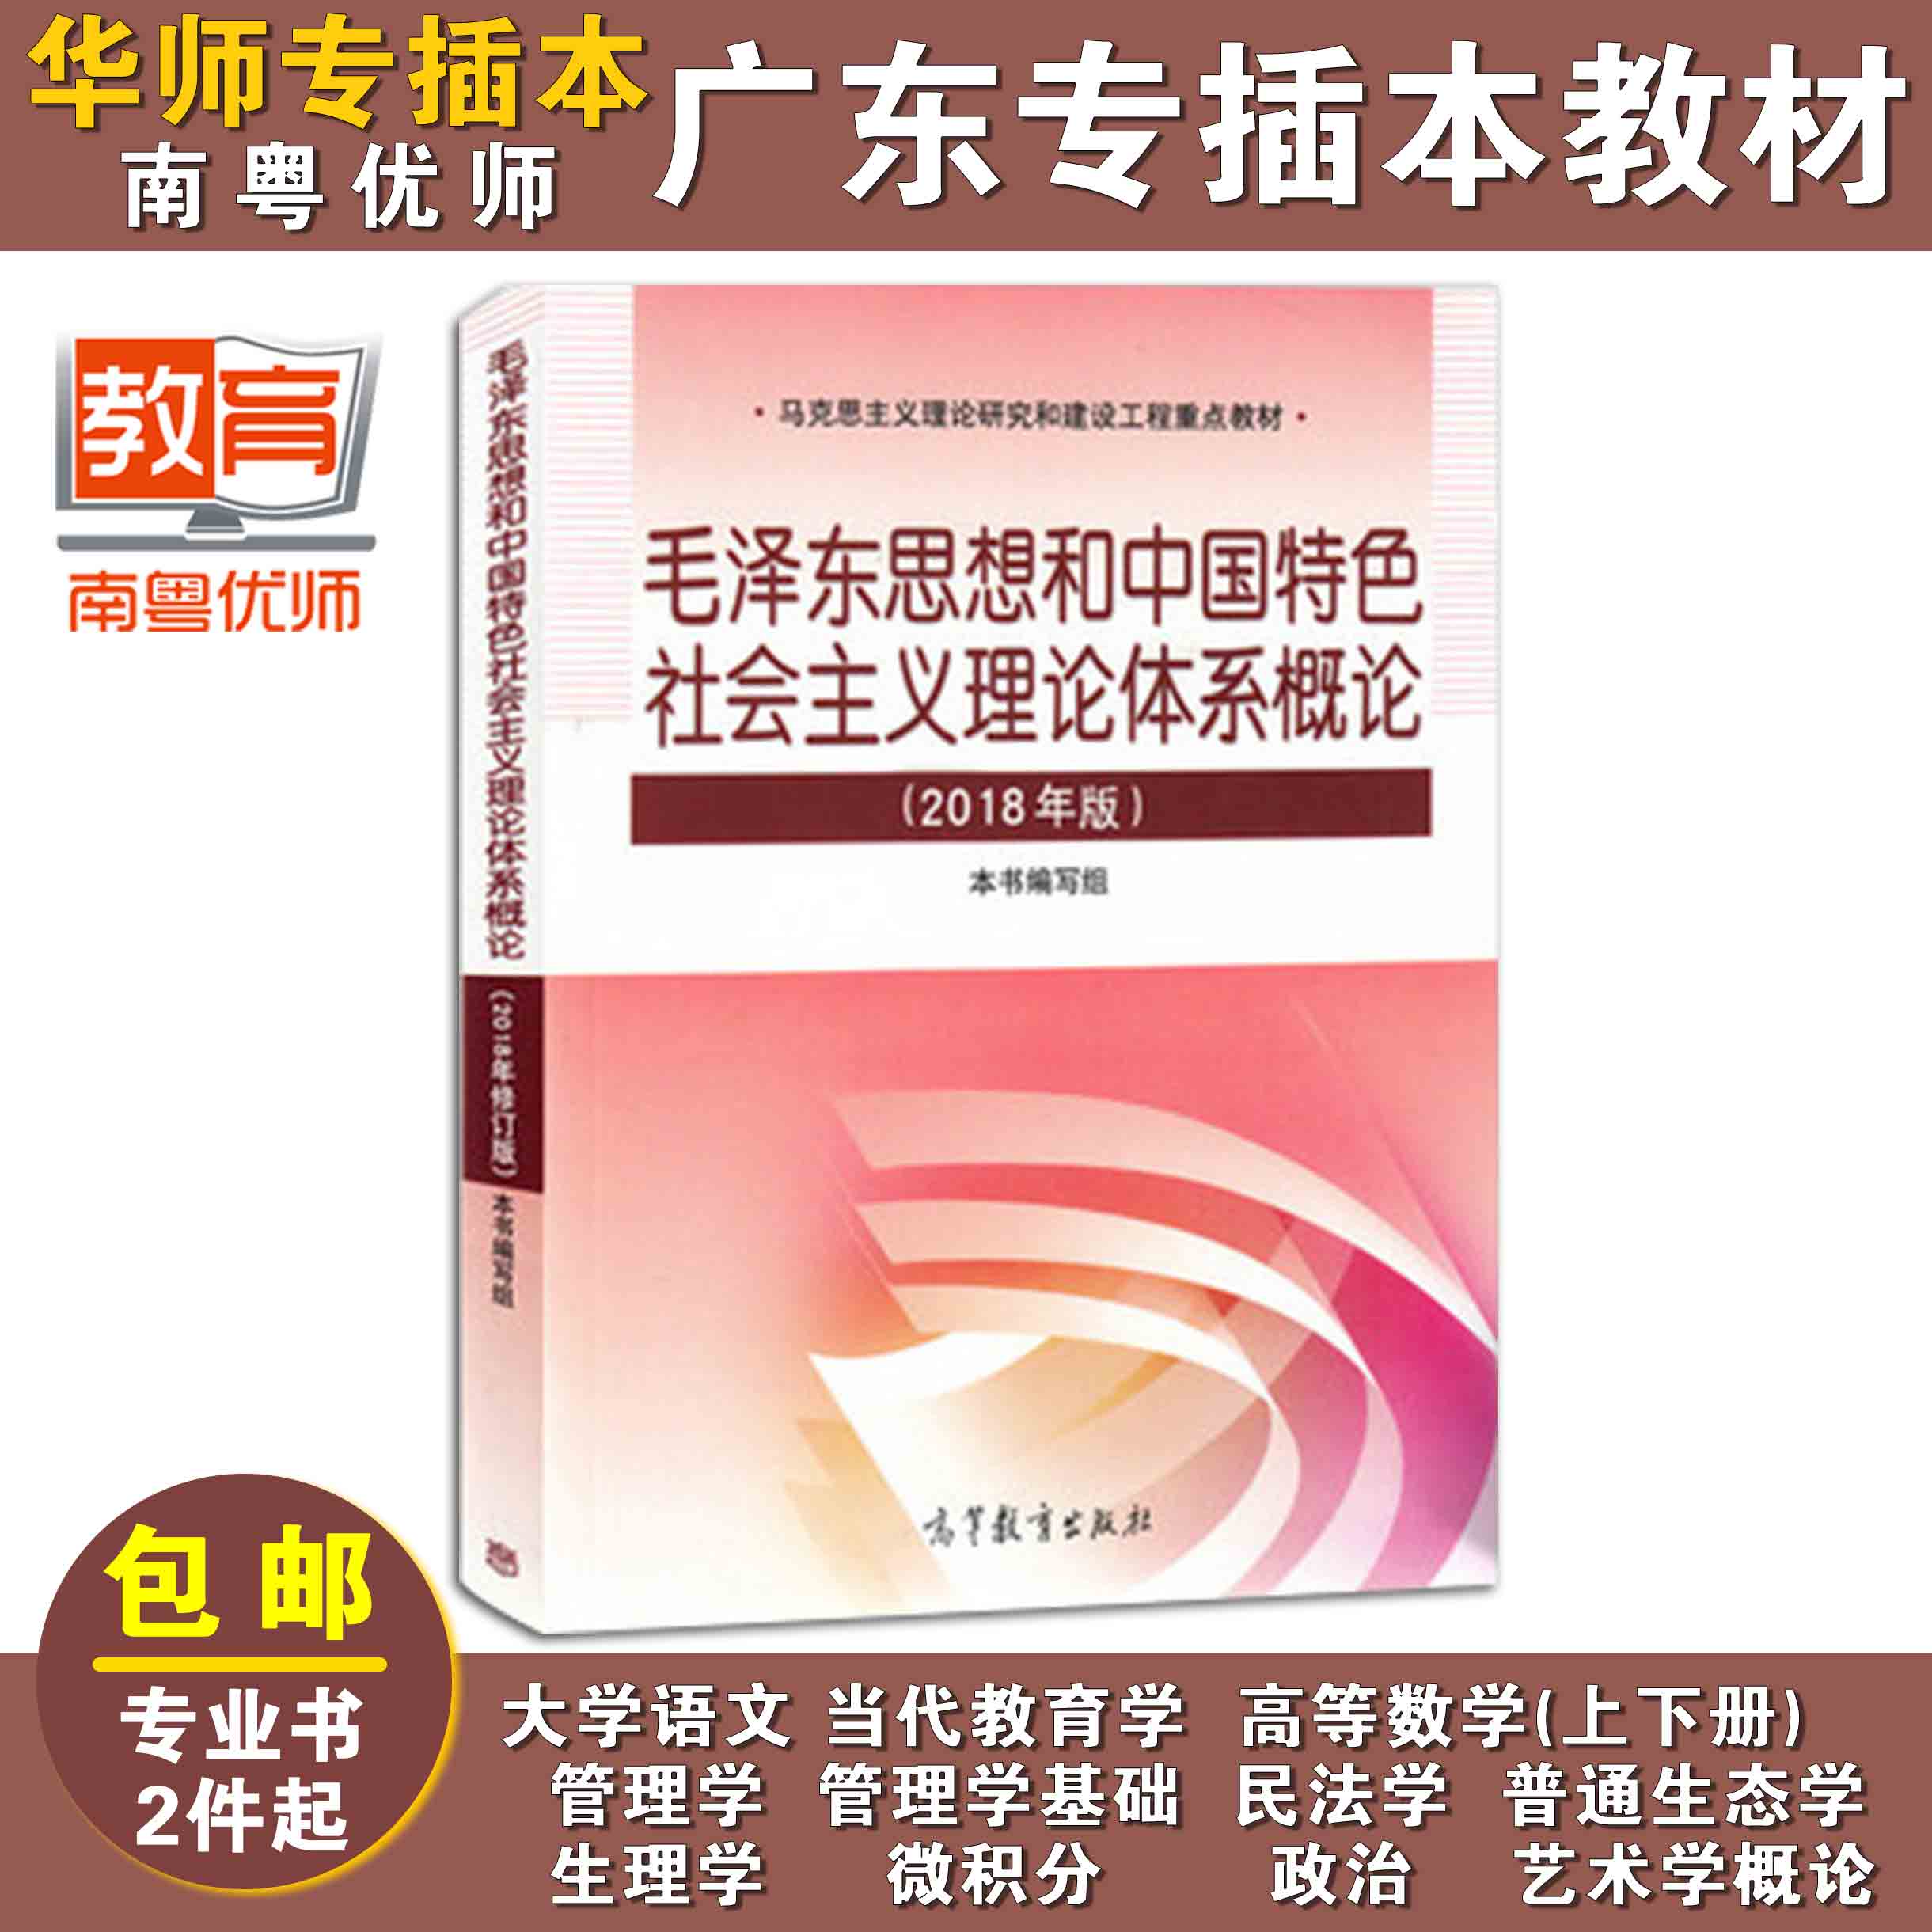 毛泽东思想和中国特色社会主义理论体系概论,本书编写组,高等教育出版社